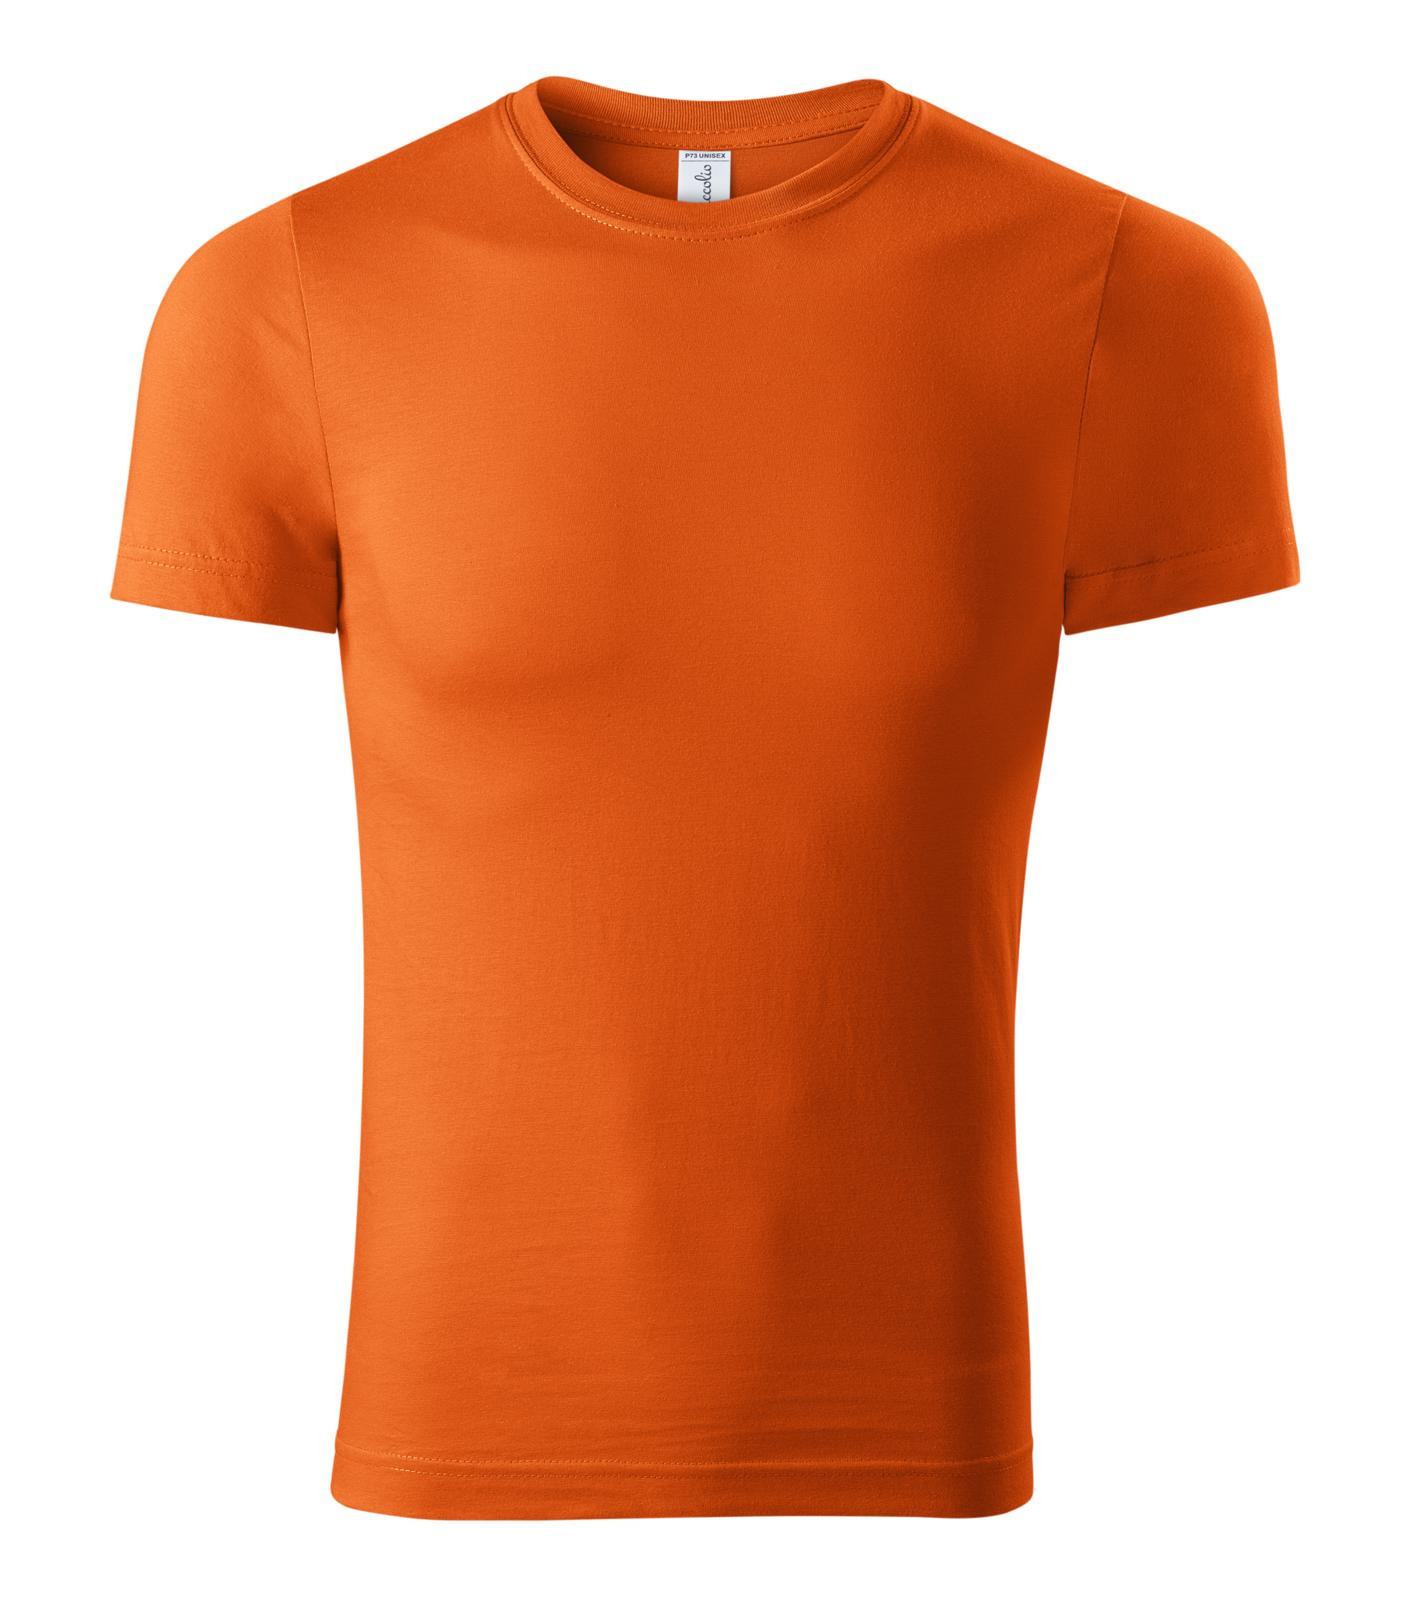 Unisex tričko Piccolio Paint P73 - veľkosť: L, farba: oranžová